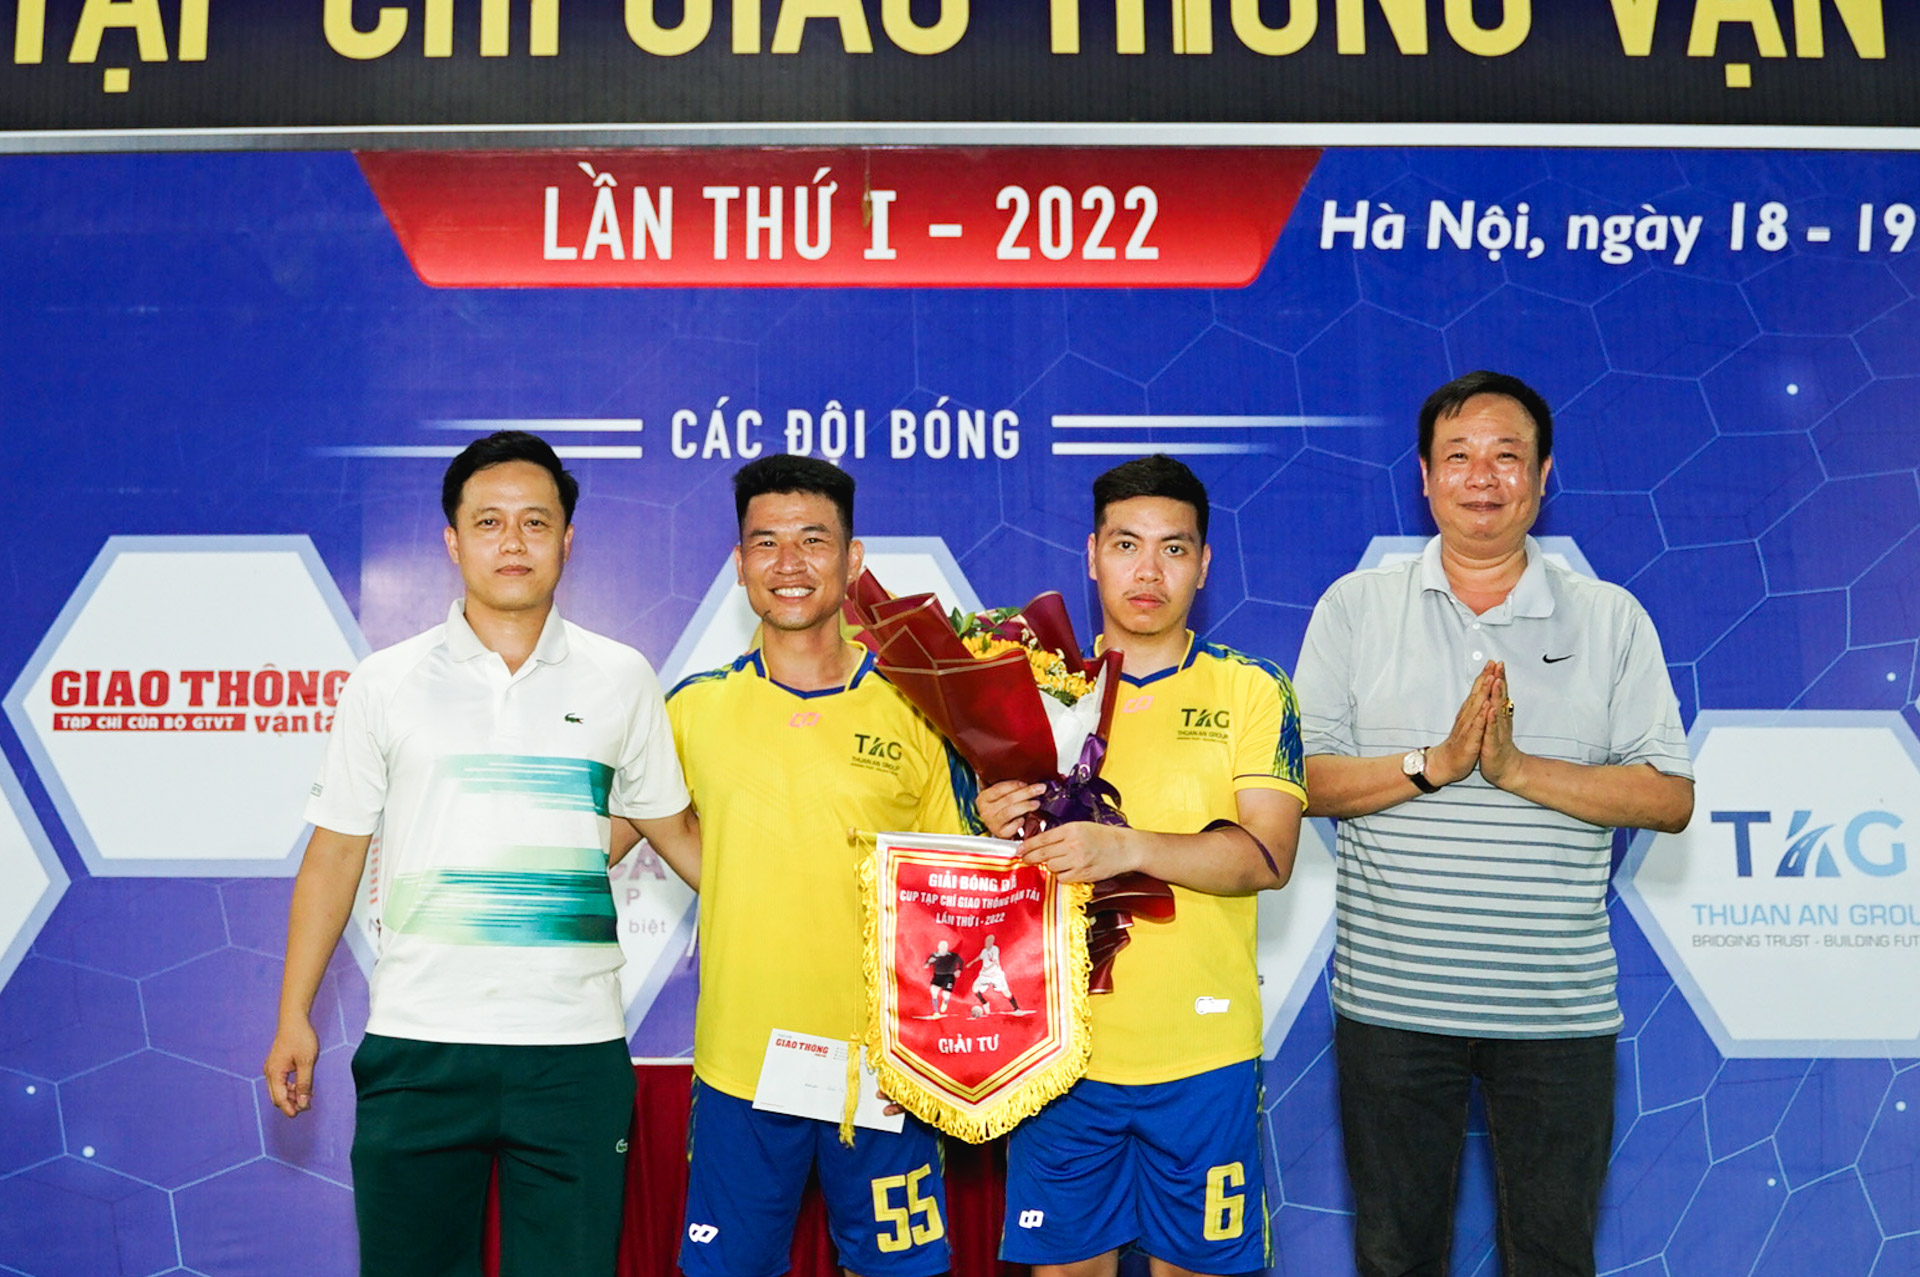 Đội Thuận An giành giải Tư